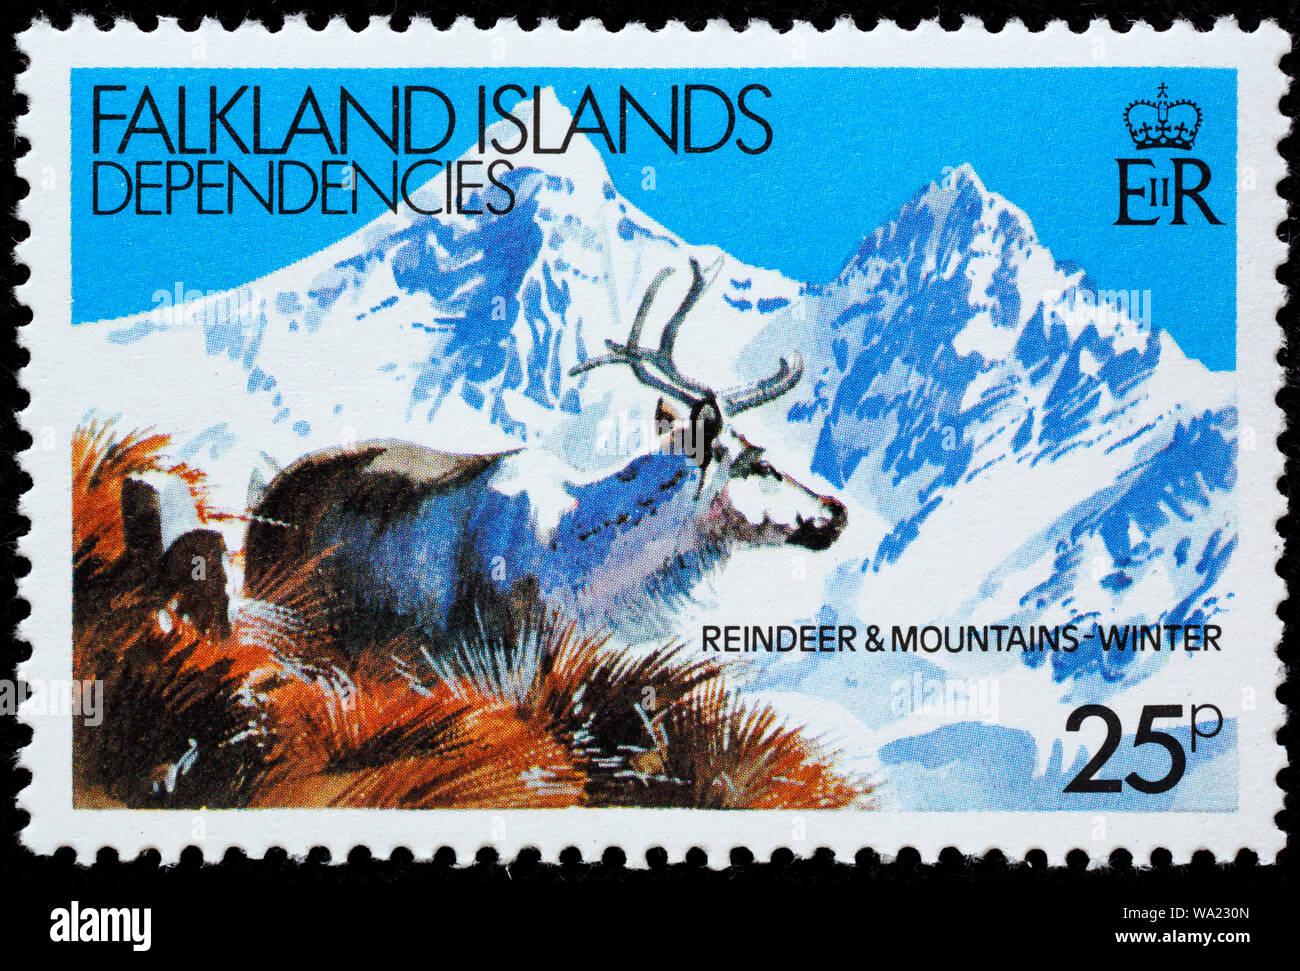 Rangifer tarandus, renne, timbre-poste, Îles Falkland, dépendances, 1982 Banque D'Images